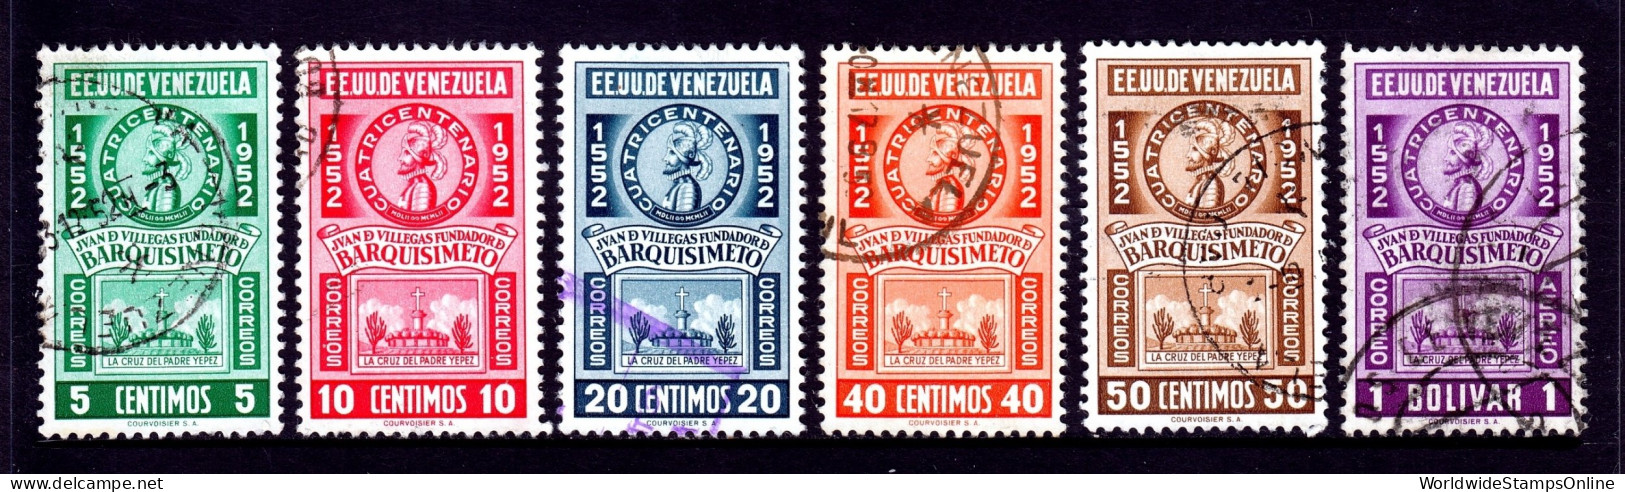 Venezuela - Scott #635-640 - Used - Small Crease #640 - SCV $9.00 - Venezuela